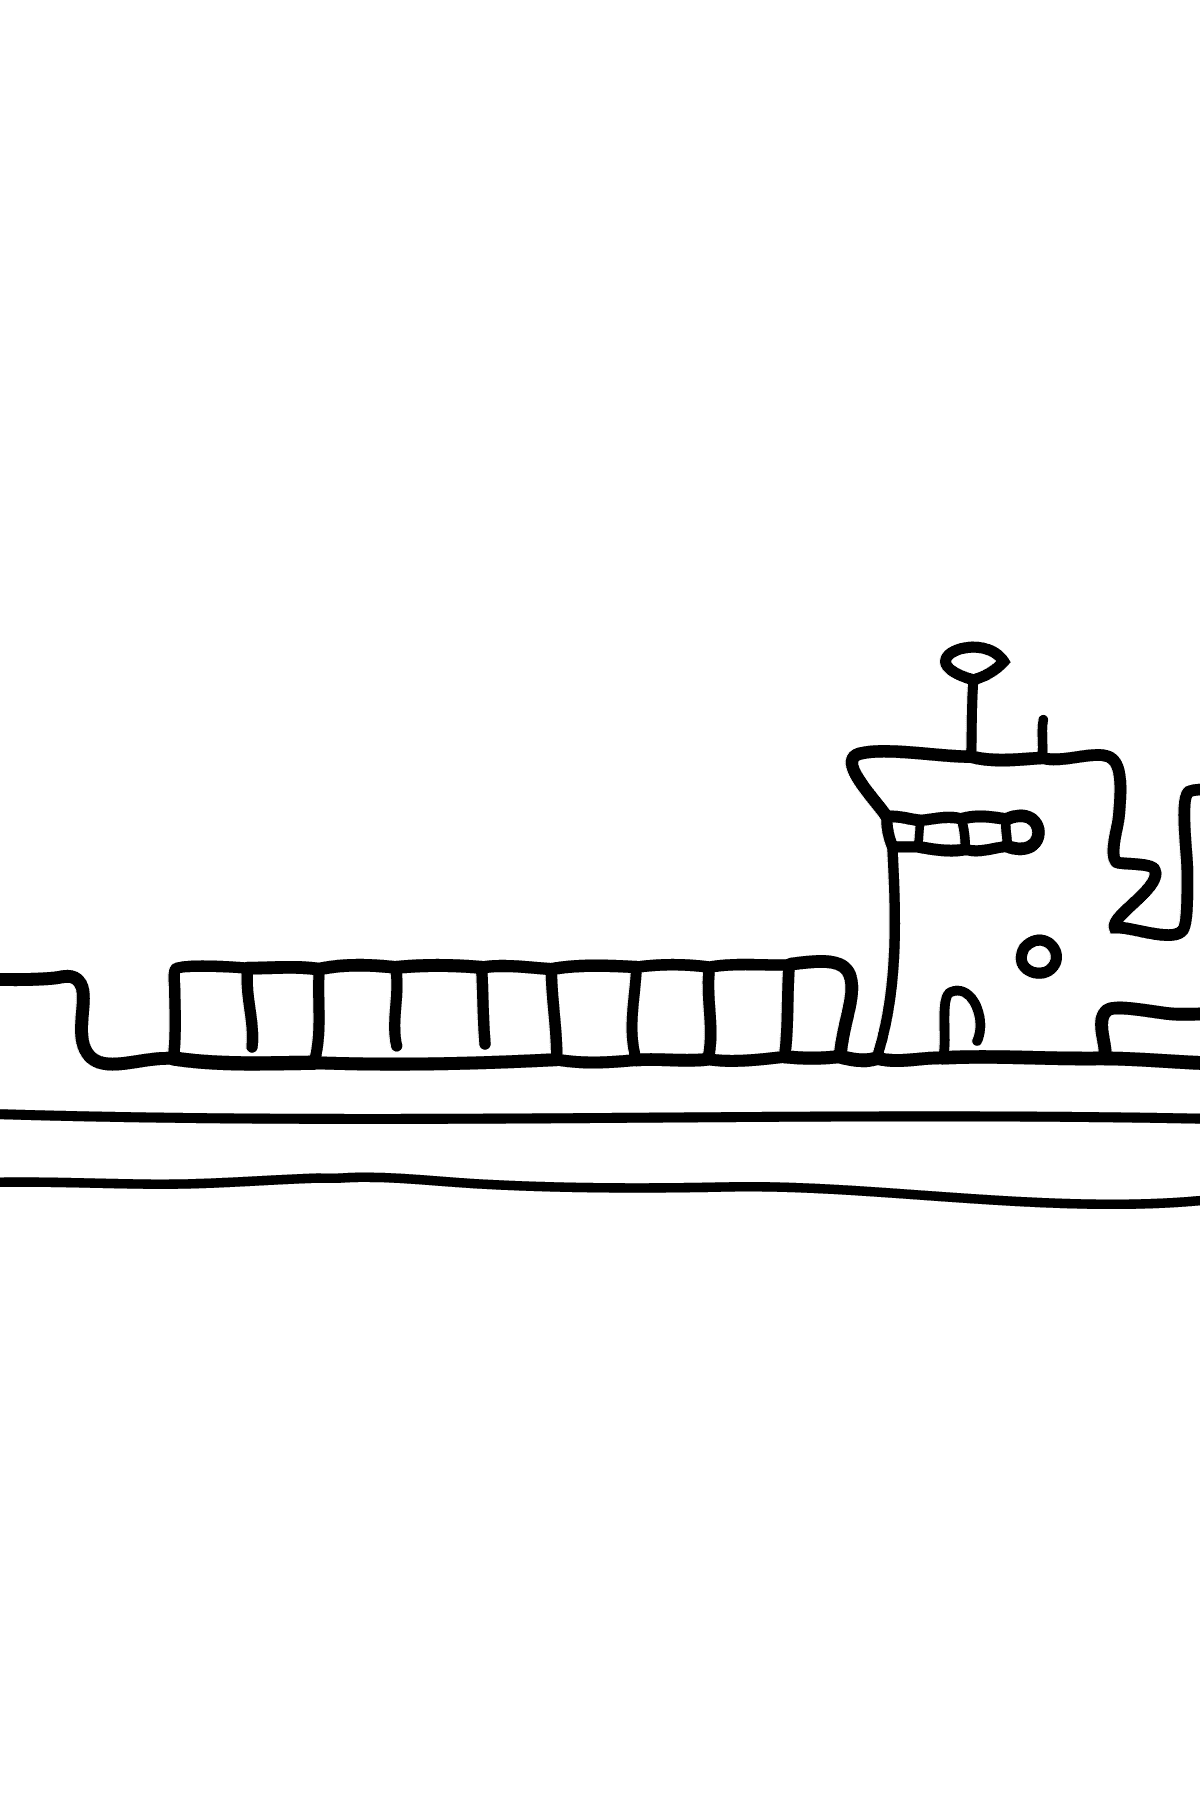 Bild von Schiff zum Ausmalen - Ein Trockenfrachtkahn